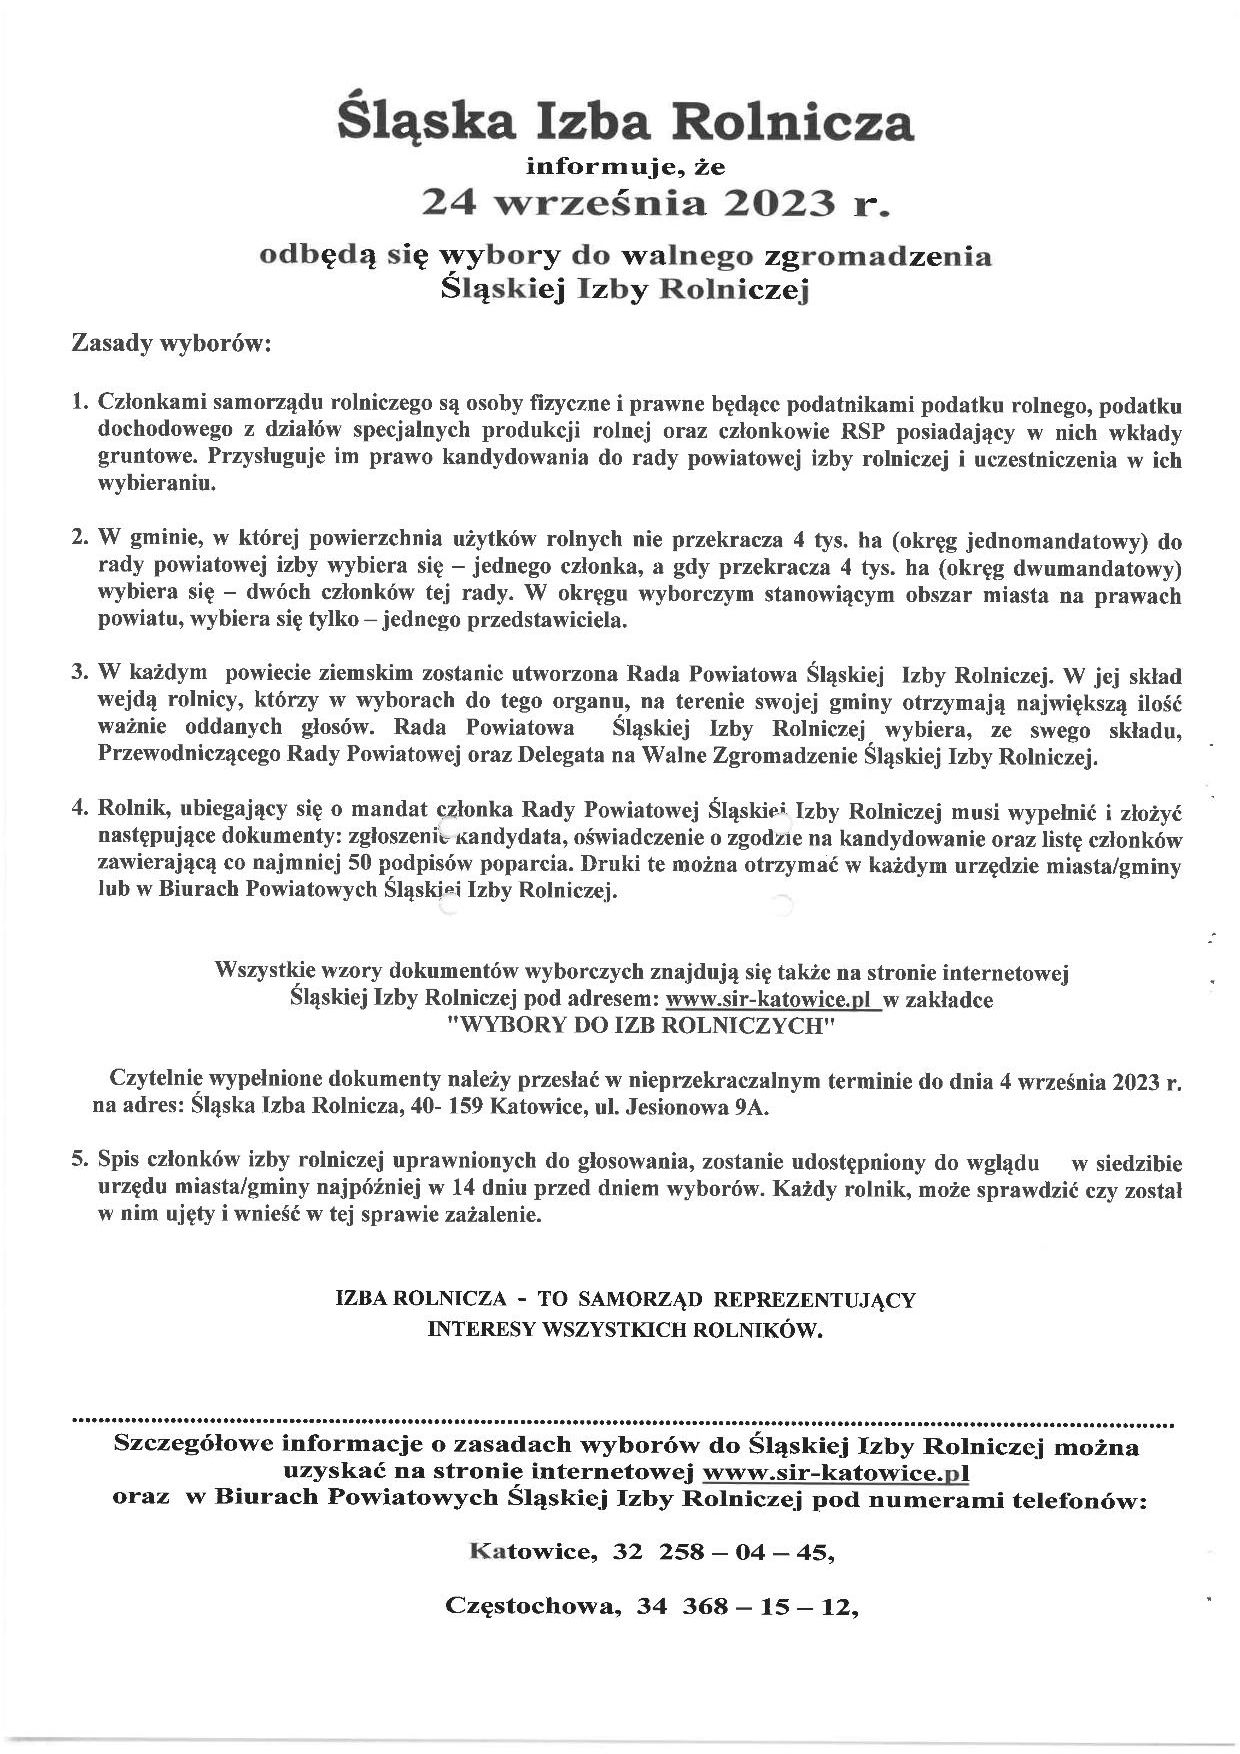 Plakat dot. wyborów do walnego zgromadzenia Śląskiej Izby Rolniczej, szczegółowe informacje na www.sir-katowice.pl